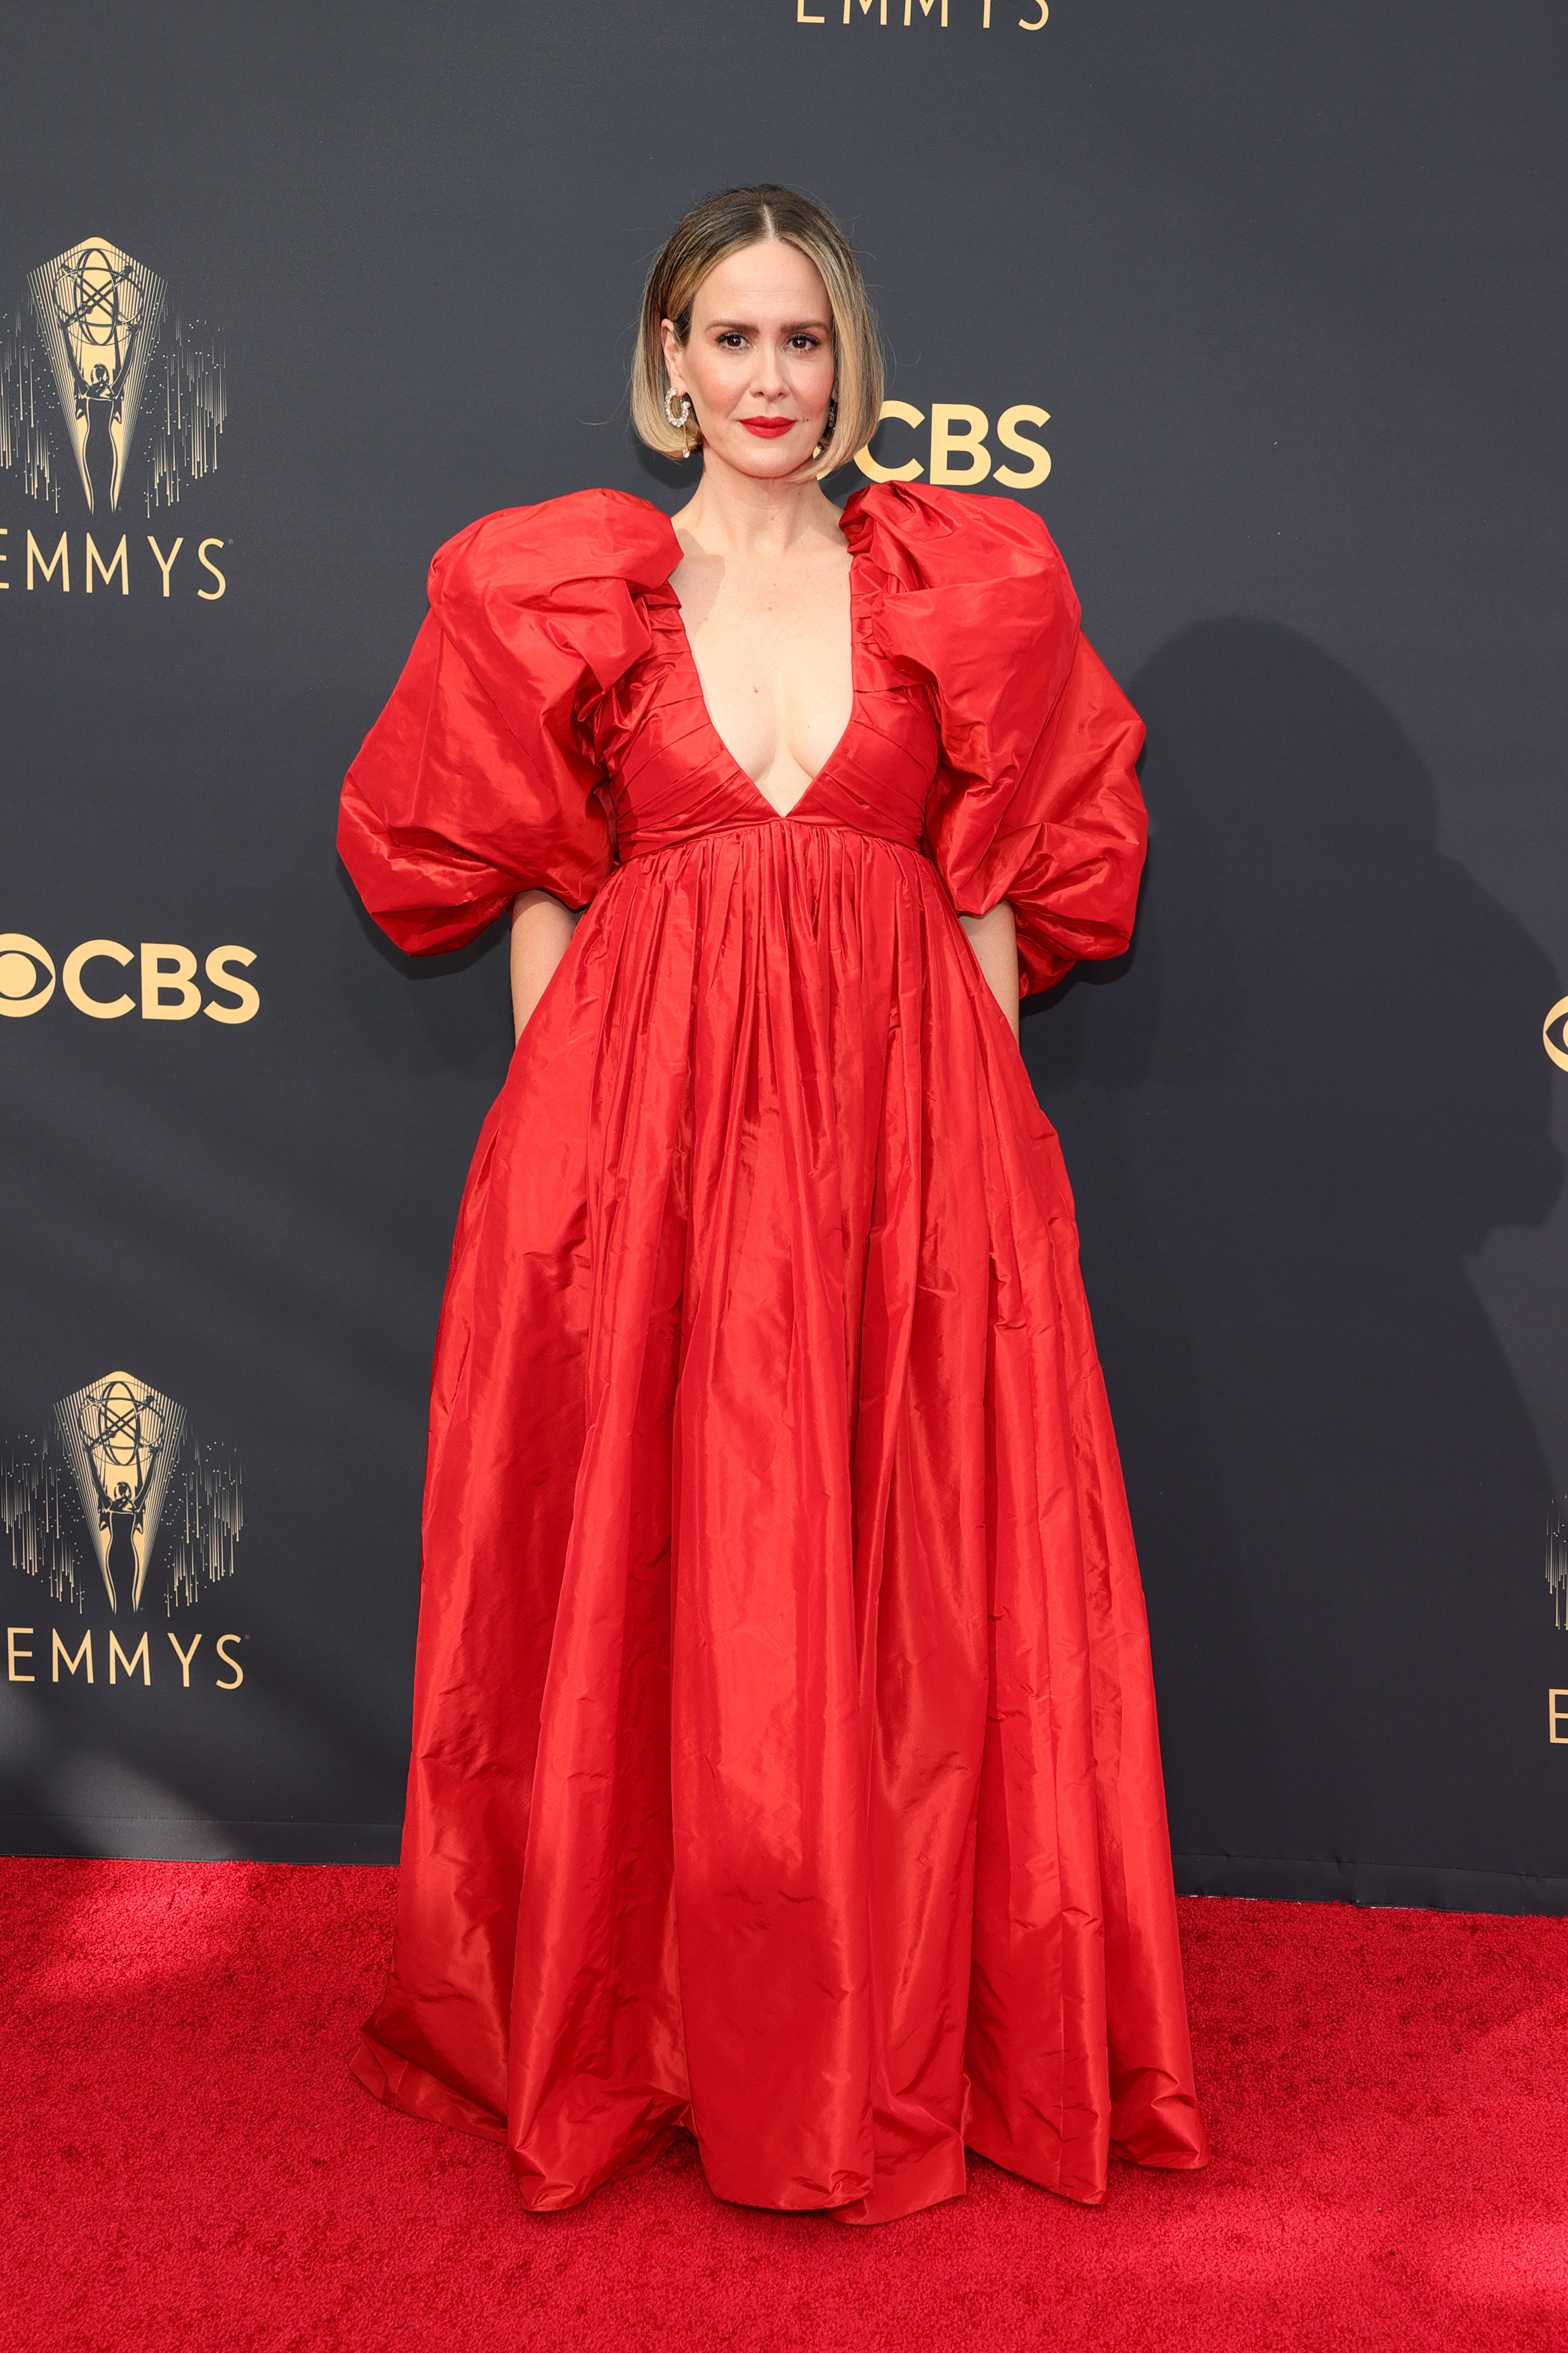 Sarah Paulson at the 2021 Emmy Awards